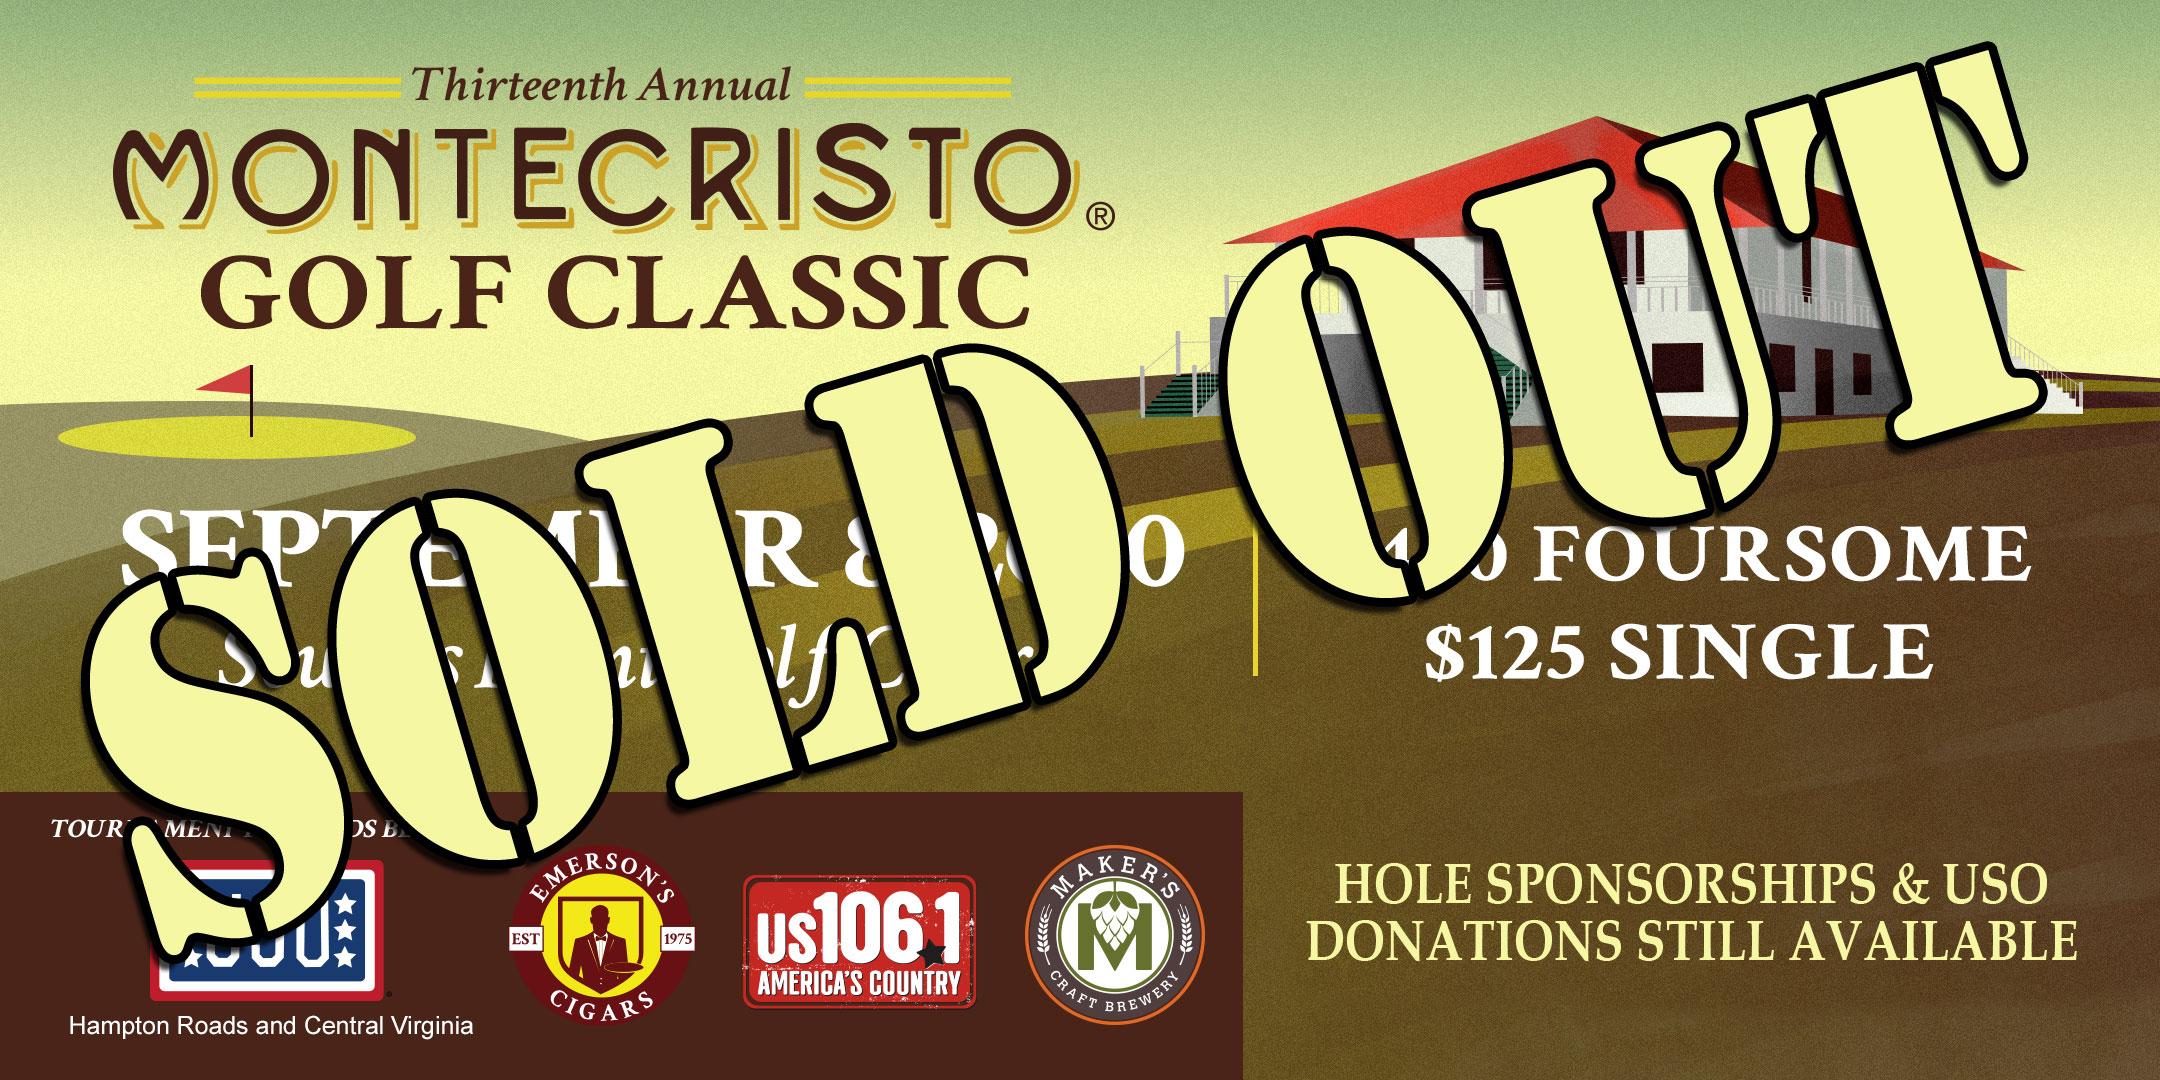 13th Annual Montecristo Golf Classic